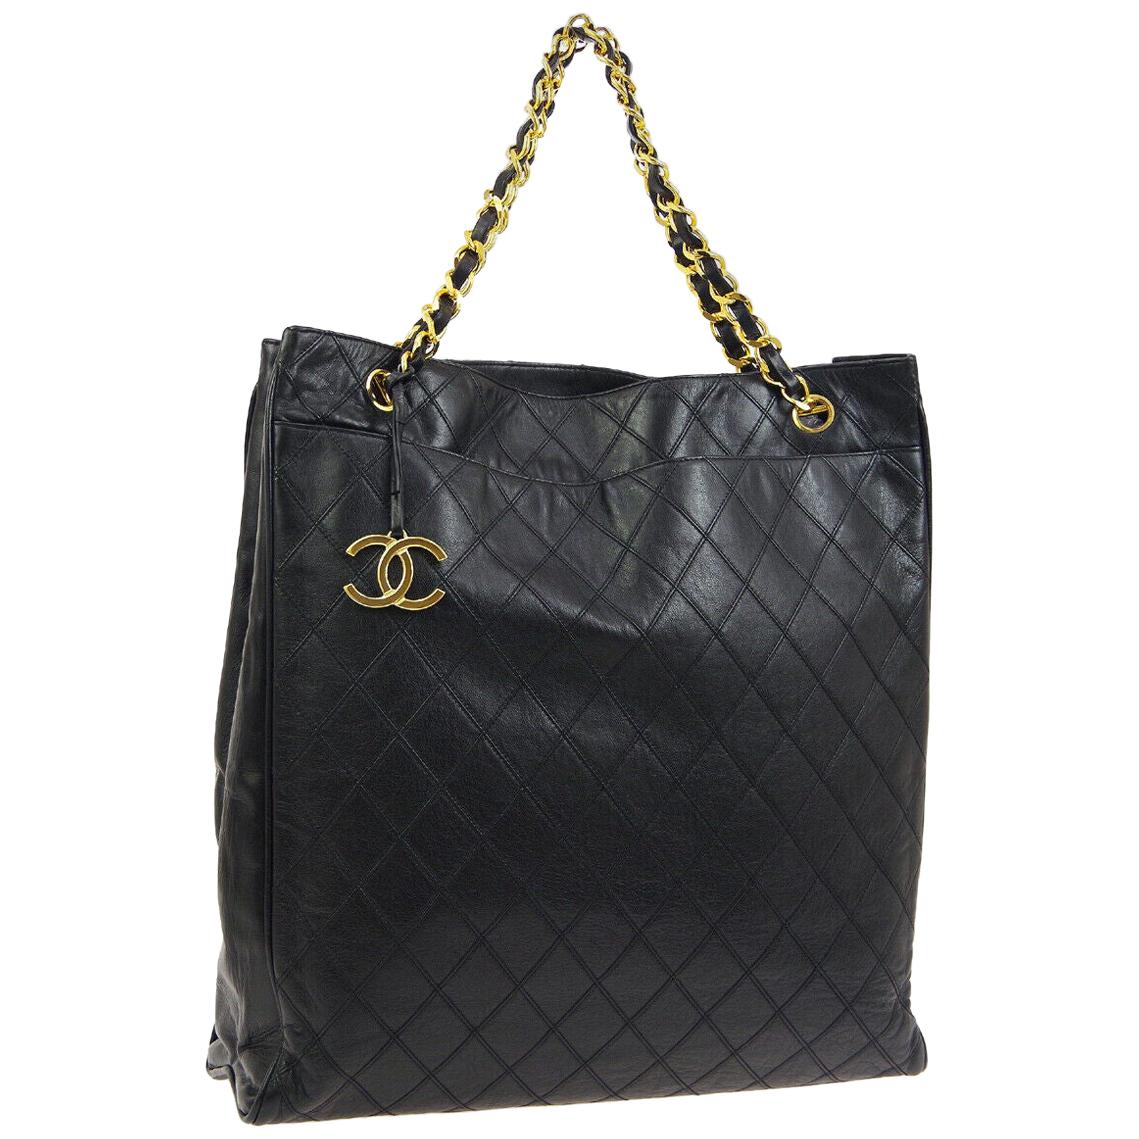 Chanel Black Leather Gold Large Carryall Travel Shopper Shoulder Tote Bag